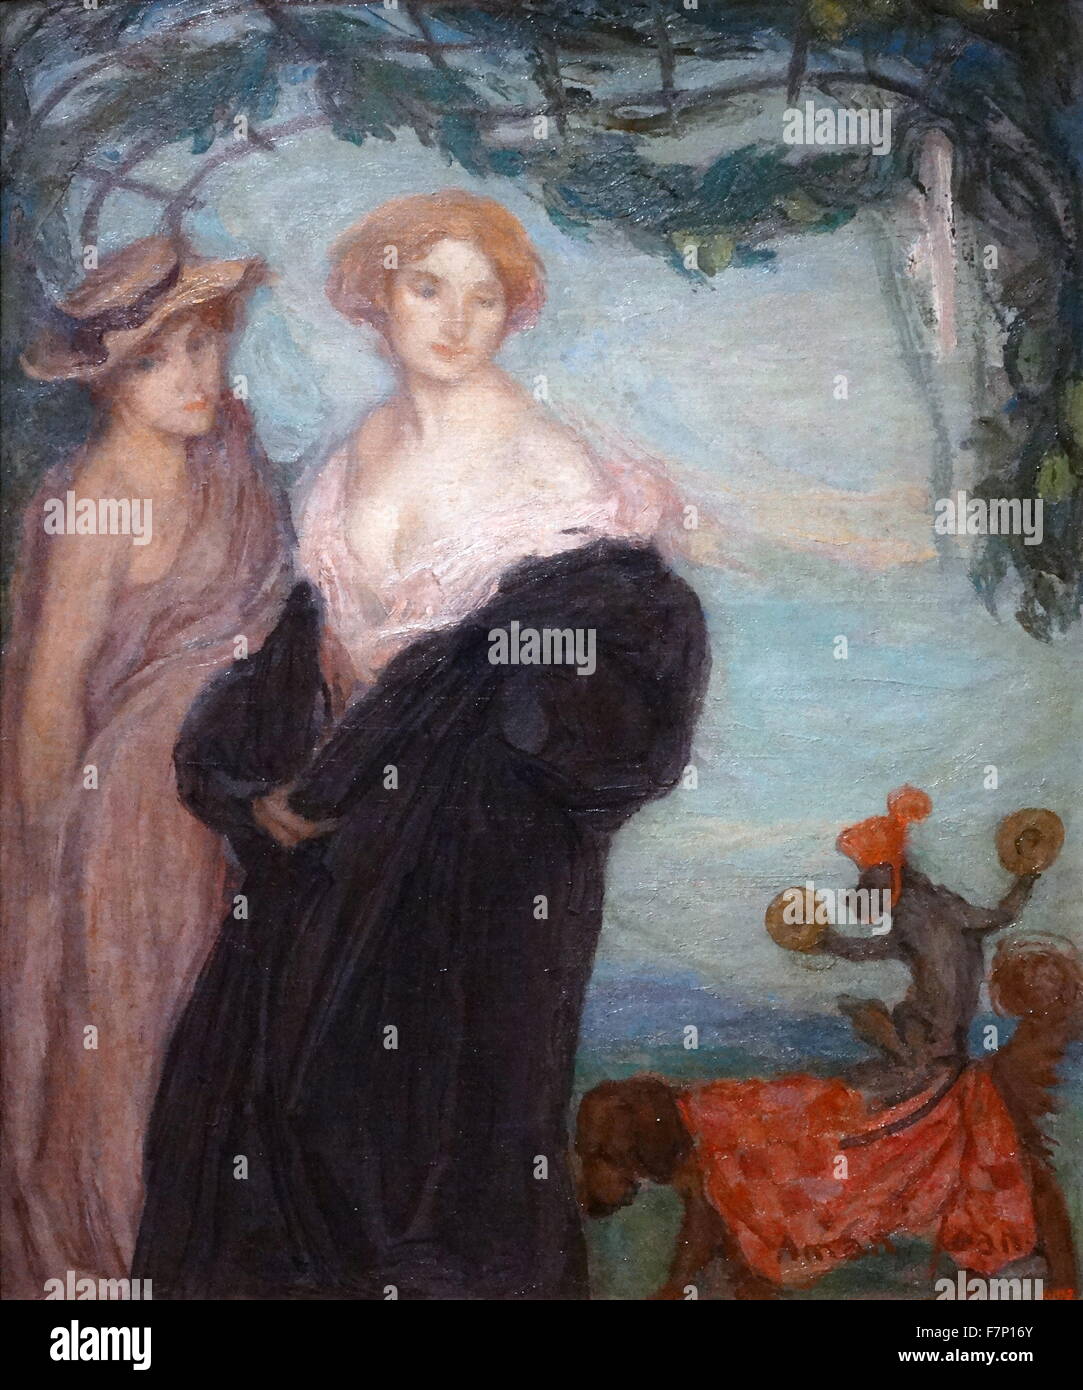 Gemälde mit dem Titel "Die zwei Freunde" französischen symbolistischen Malers Edmond Aman-Jean (1858-1936), Mitbegründer der Salon des Tuileries. Datiert 1907 Stockfoto